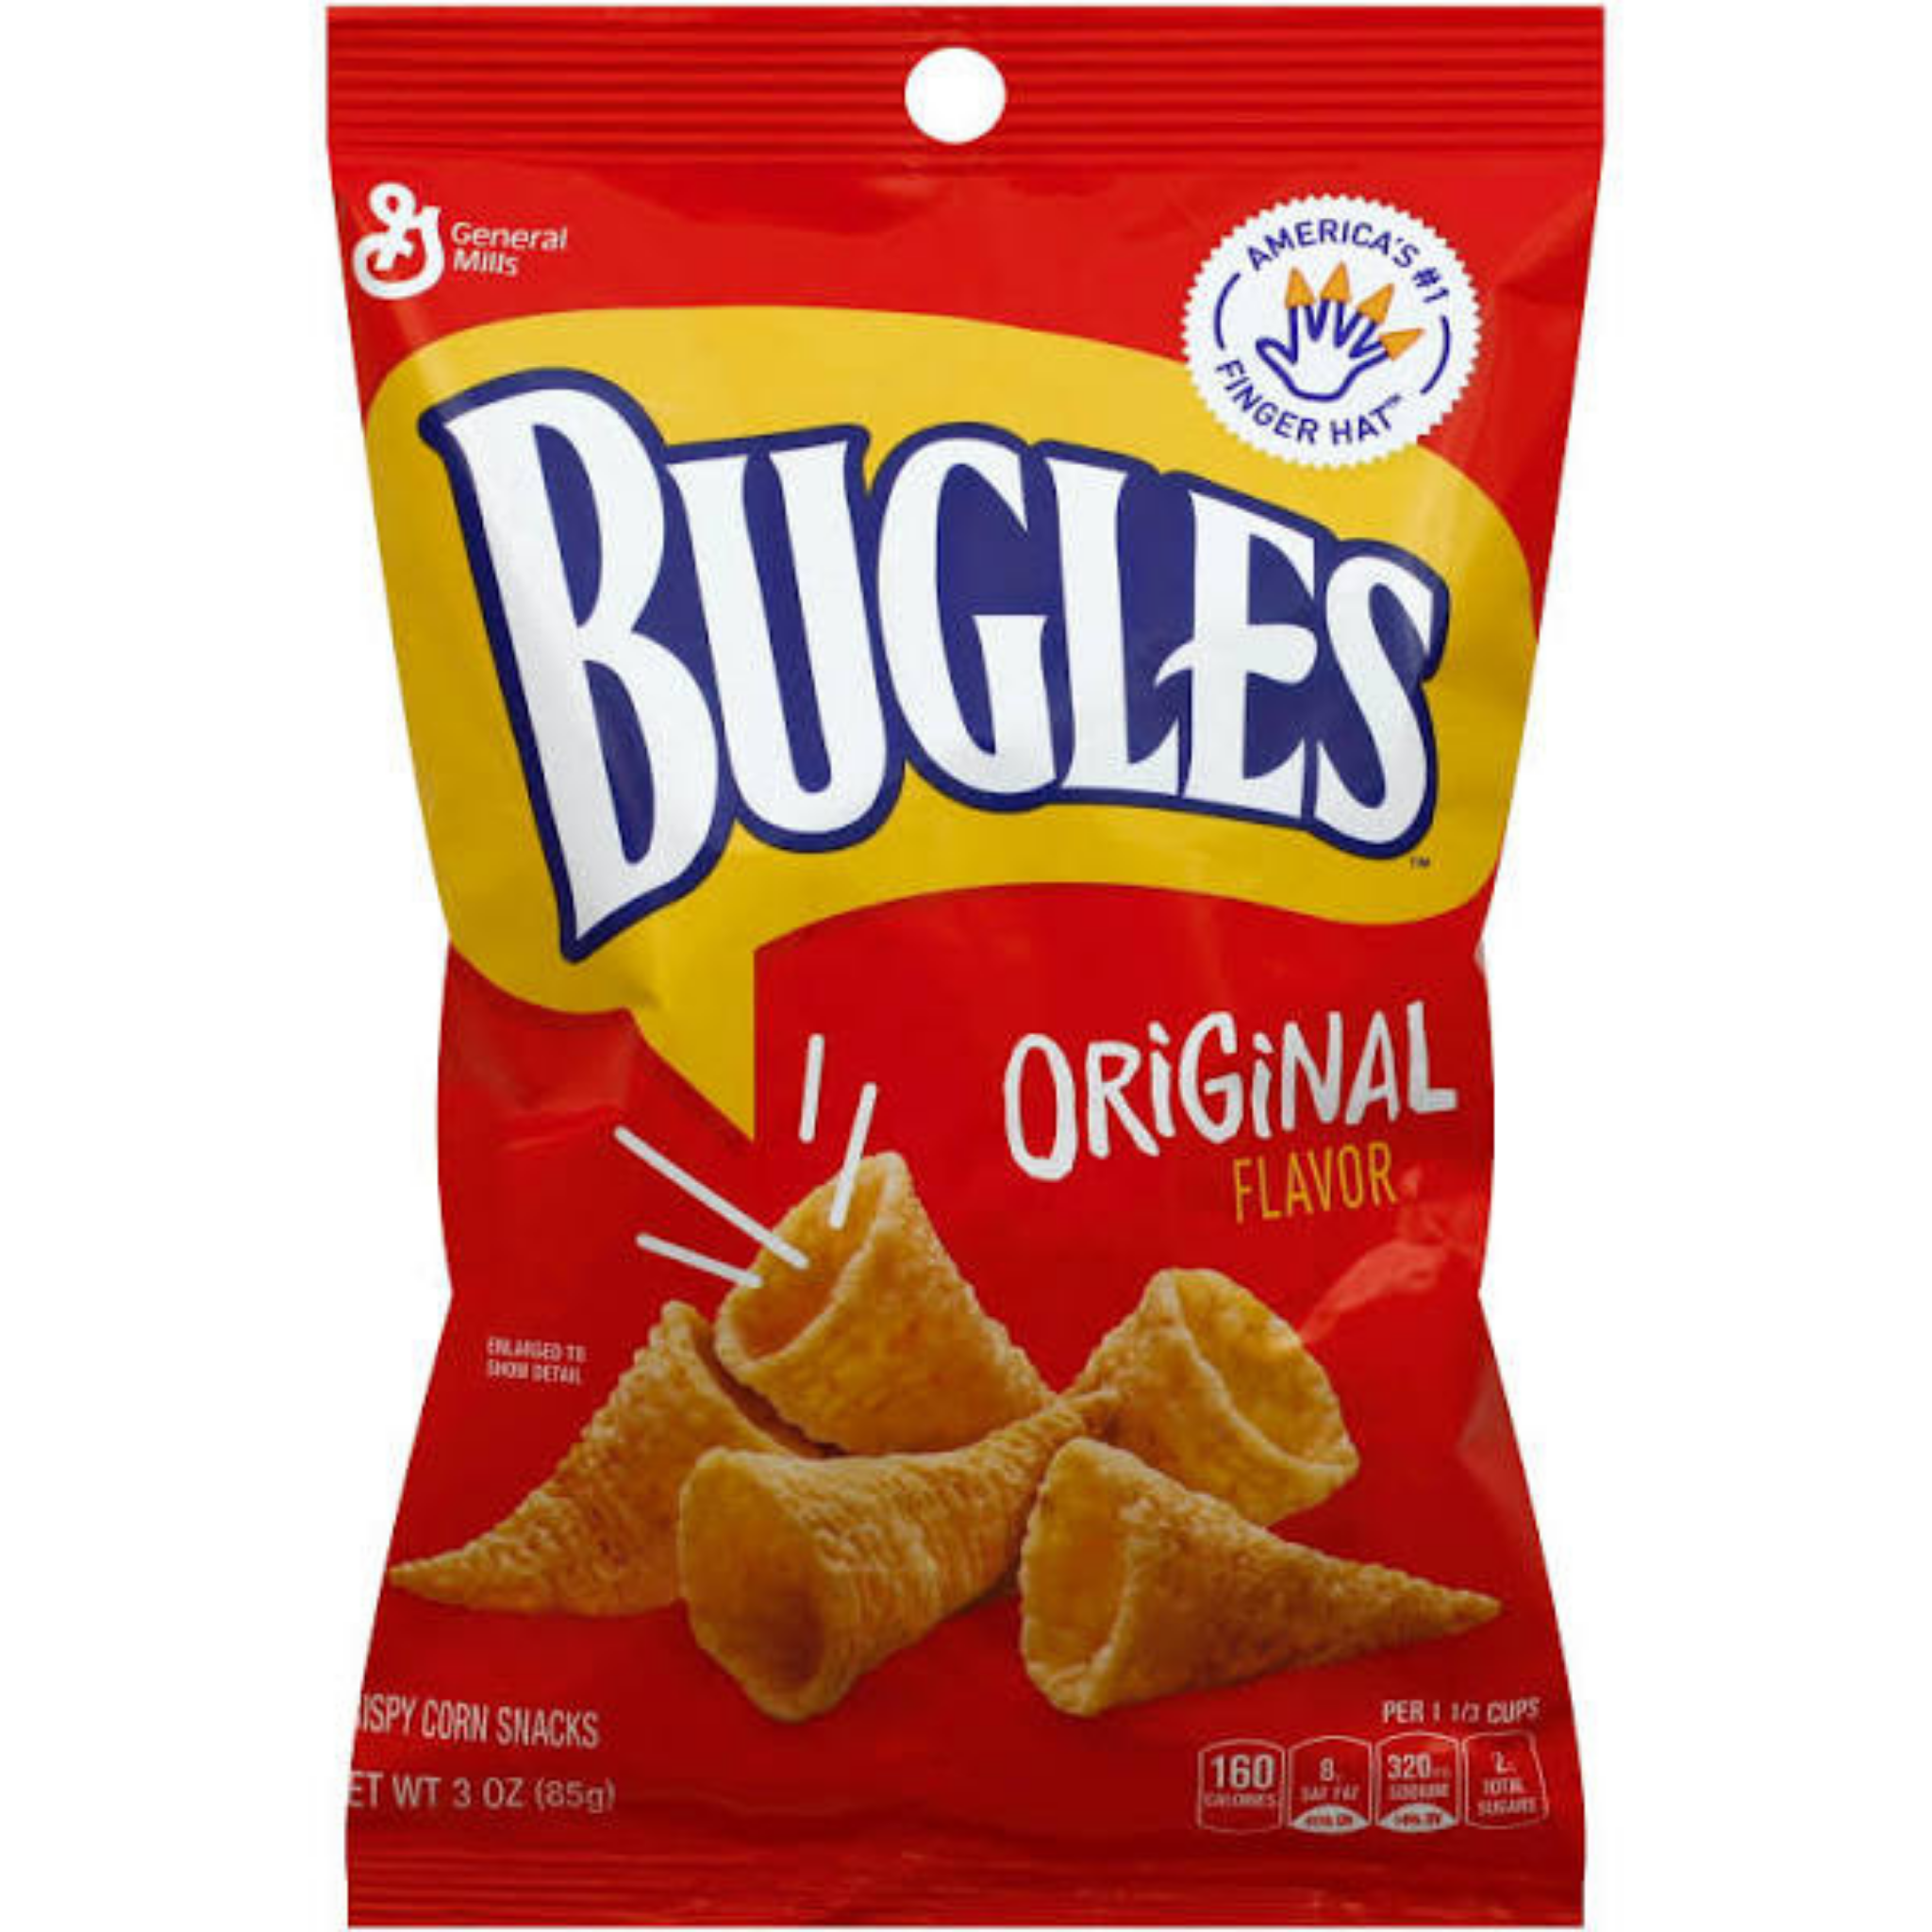 Bugles Orignal 3.7oz